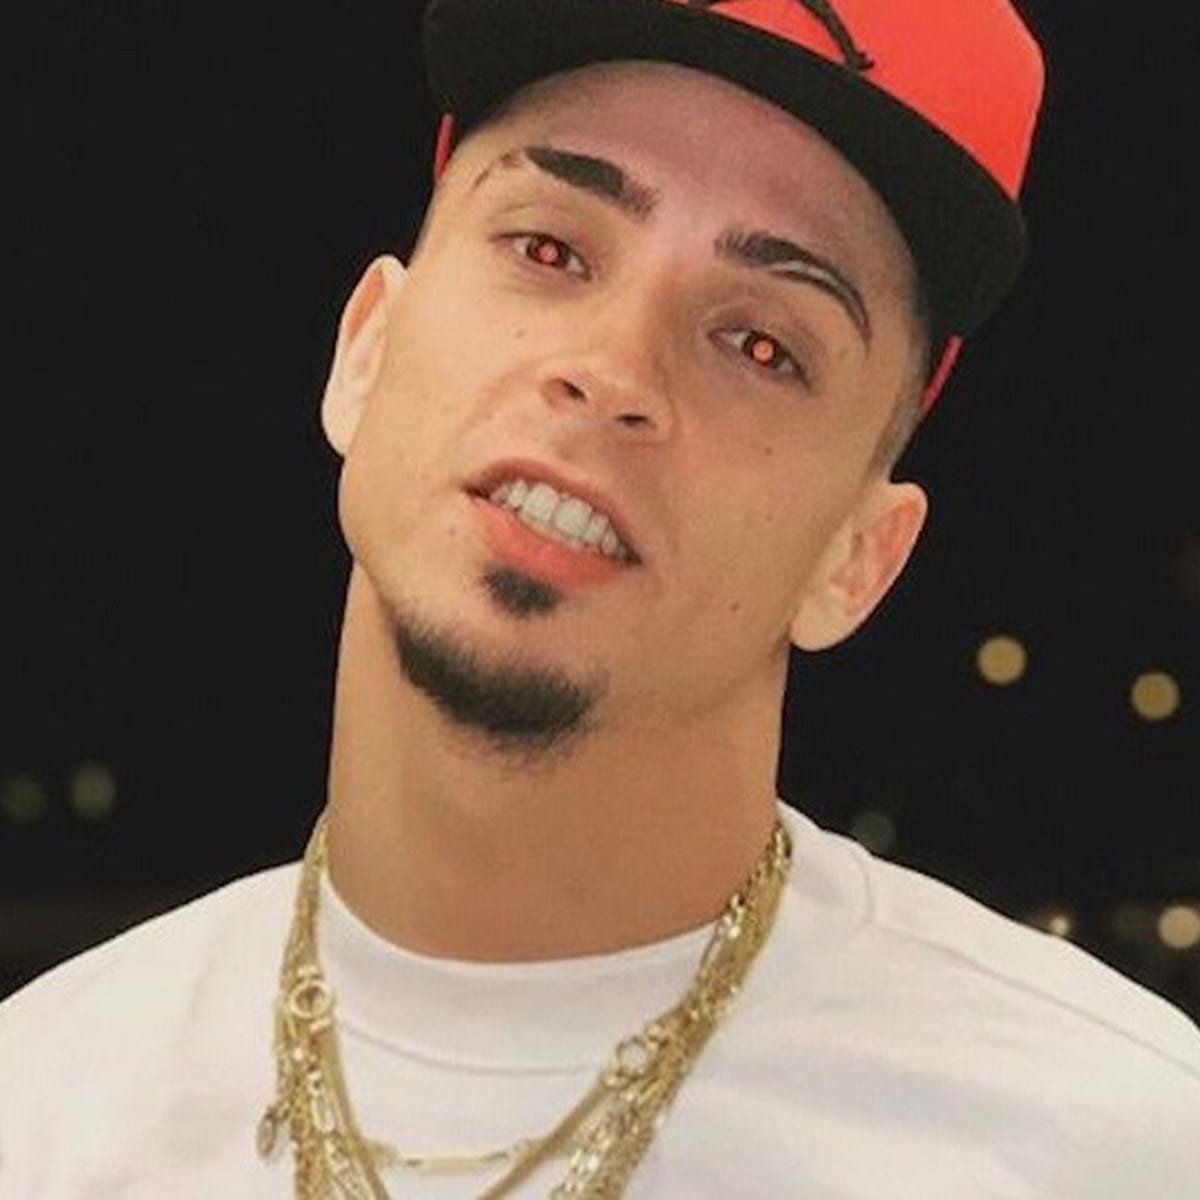 PJ acredita que rapper Mota Jr foi torturado antes de morrer - Portugal -  Correio da Manhã